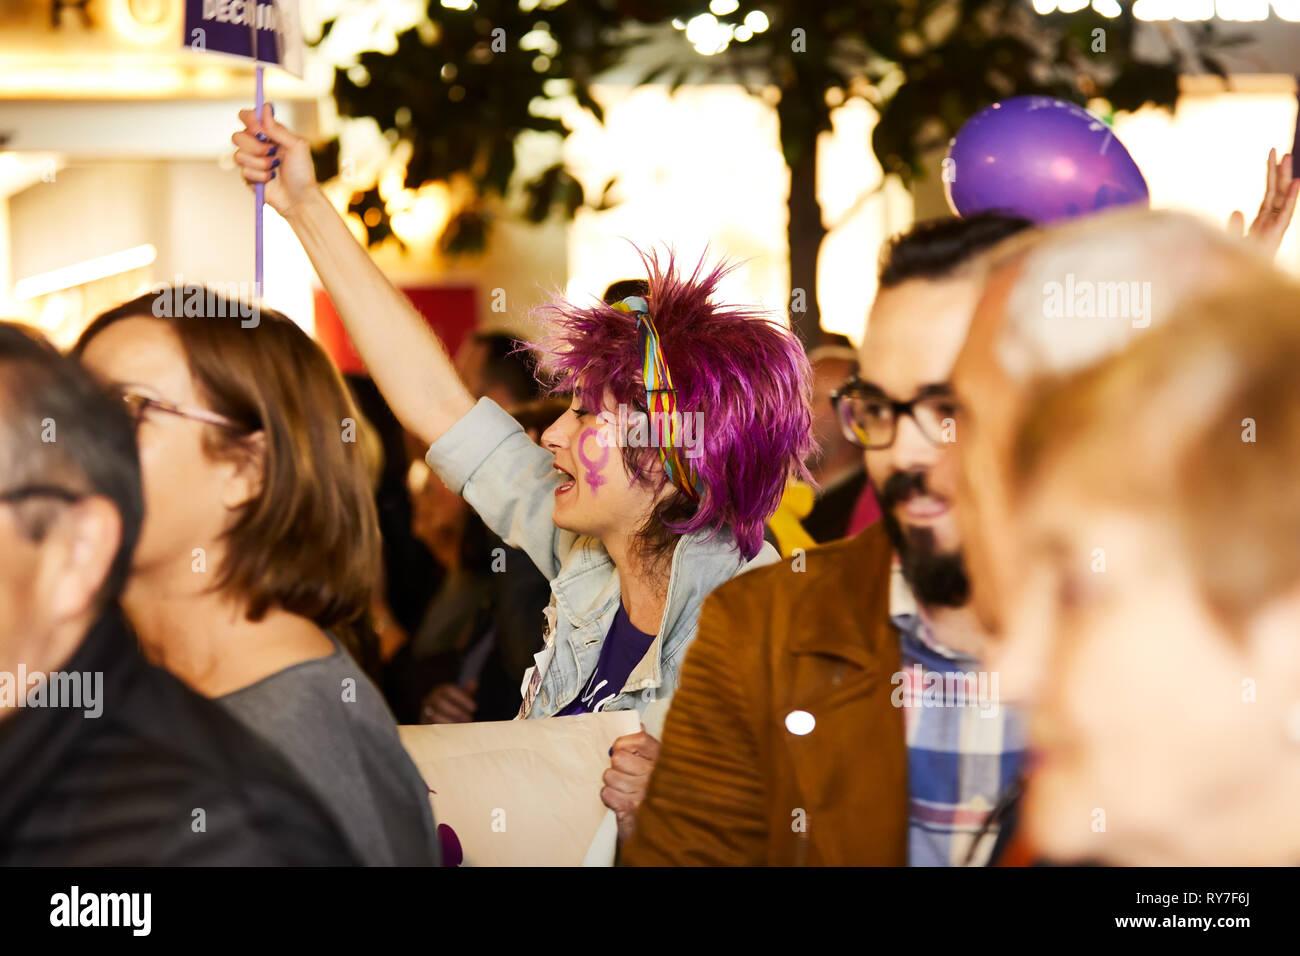 CORDOBA, Spanien - 03, 08, 2019: Frau mit lila Haaren protestieren am Tag Demonstration der Frauen. Stockfoto